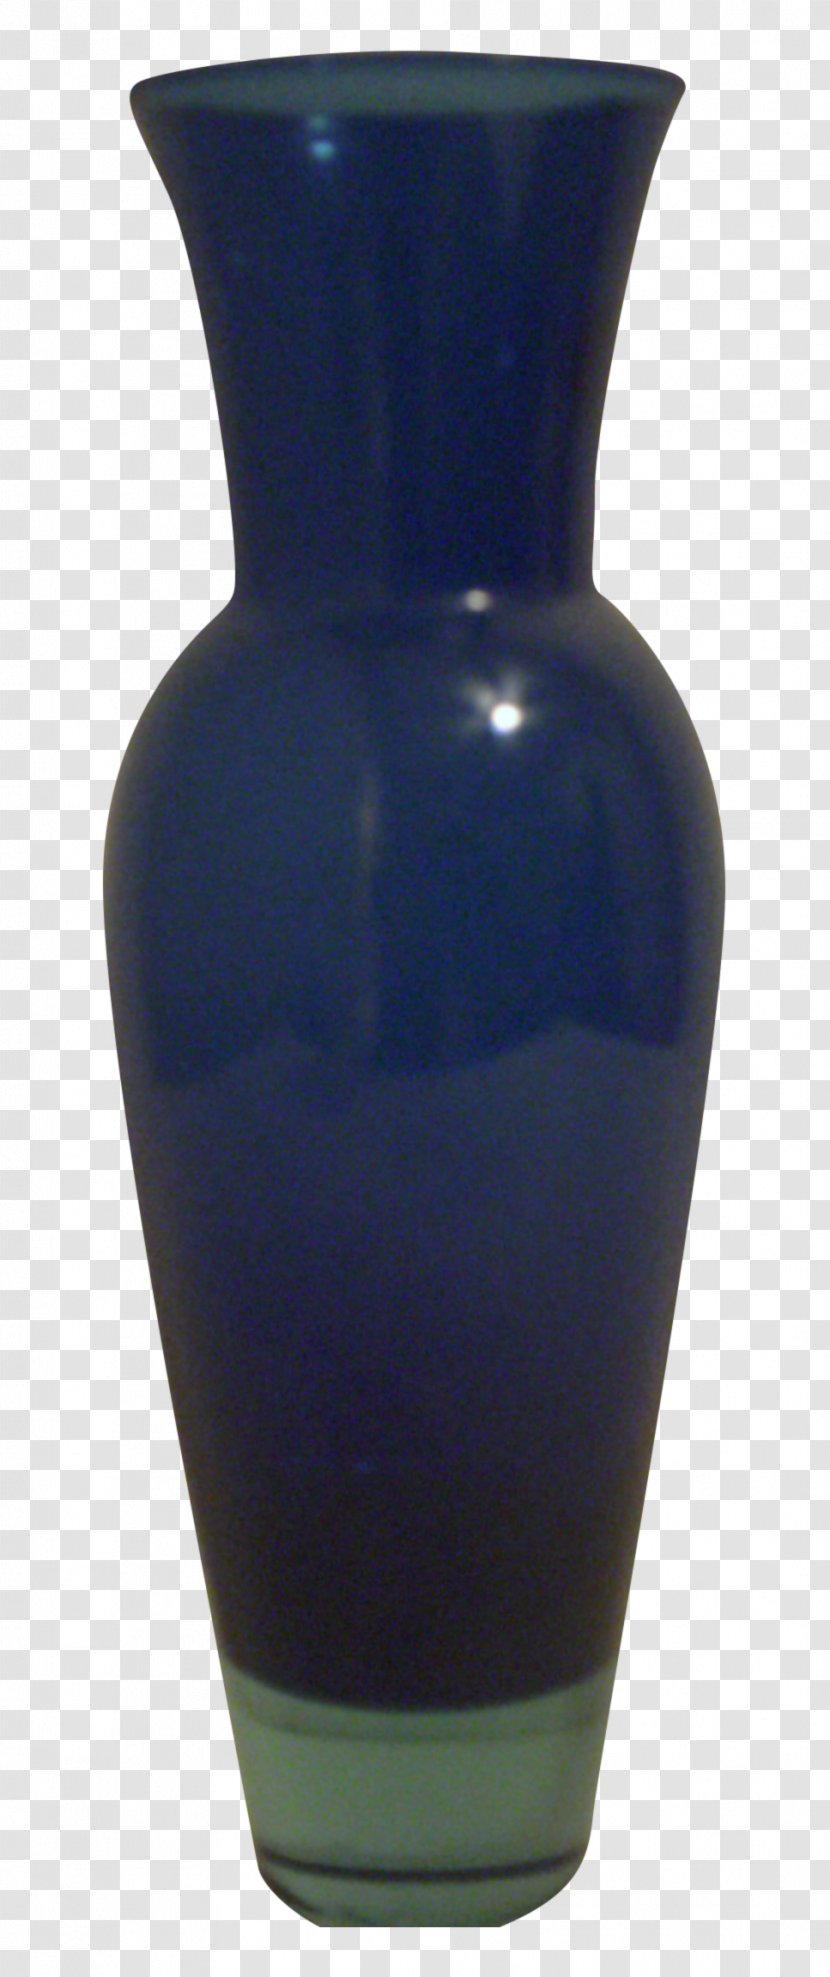 Vase Cobalt Blue Glass Transparent PNG